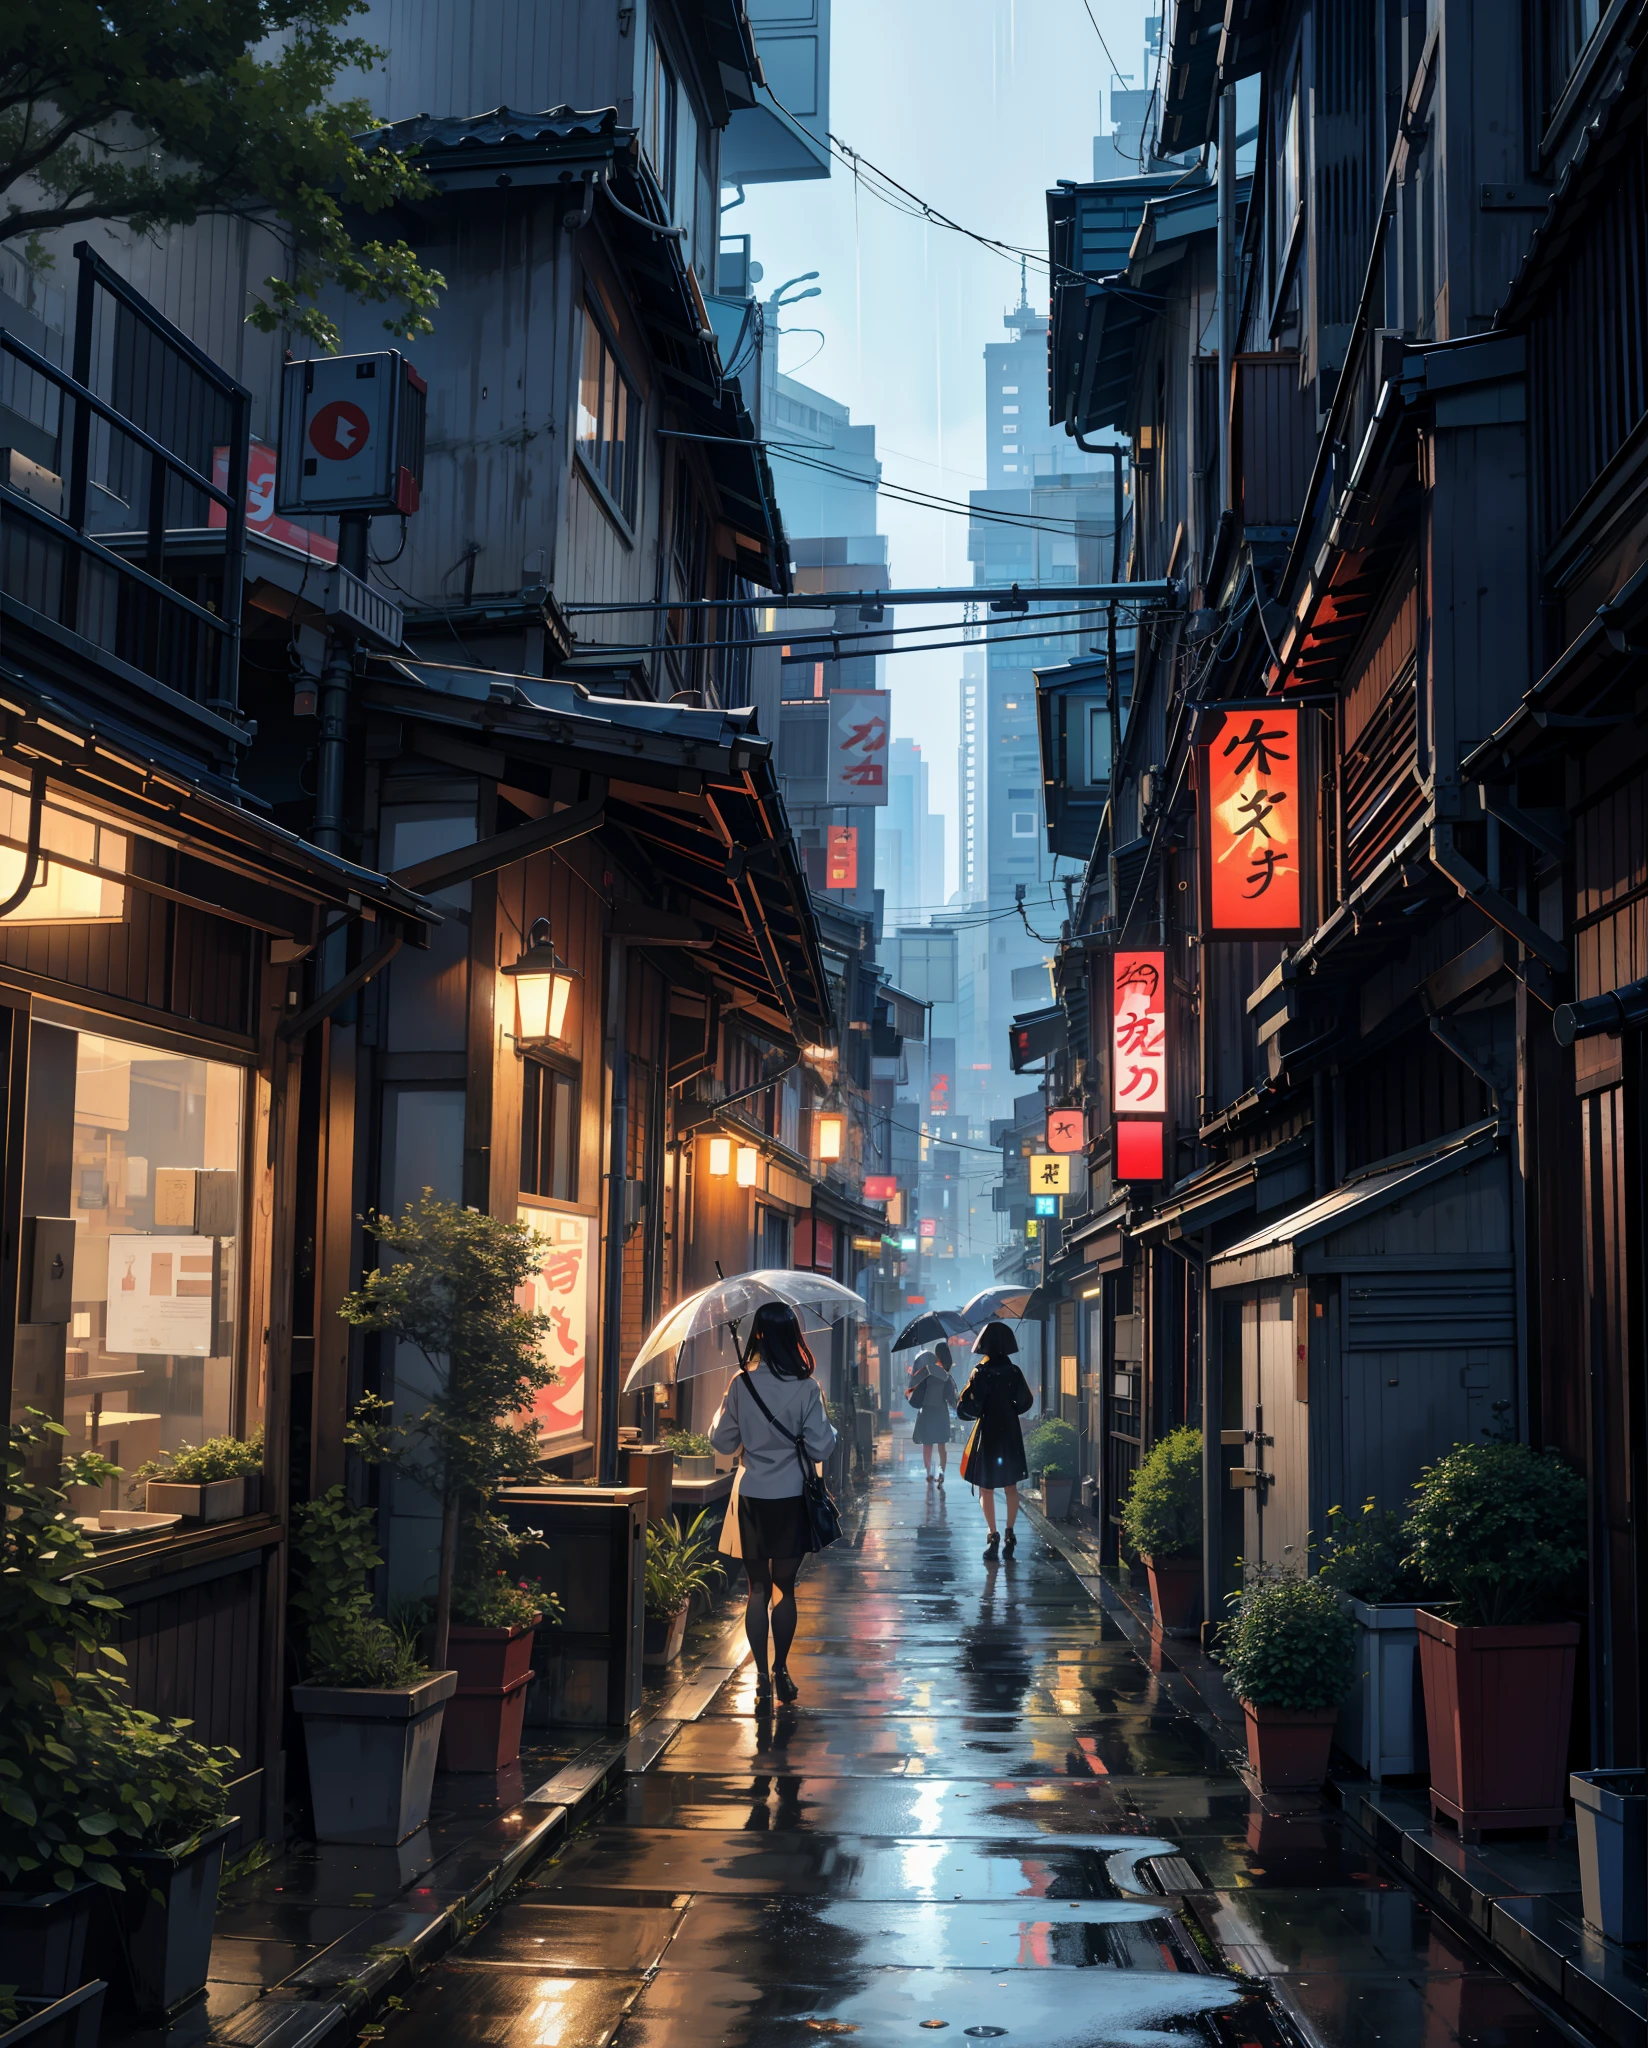 Картина дождливого времени Токио, переулок , красивый пейзаж, осадки,мокрый тротуар ((блестящий взгляд)),HD, высокое качество, отражение воды, кусты,4k HD, облако,beautiful art uHD 4 k, красивая иллюстрация произведения искусства, Красивая цифровая живопись, высокодетализированная цифровая живопись, красивые цифровые изображения, детальная роспись 4к, очень детальная цифровая живопись, насыщенные живописные цвета, Великолепная цифровая живопись